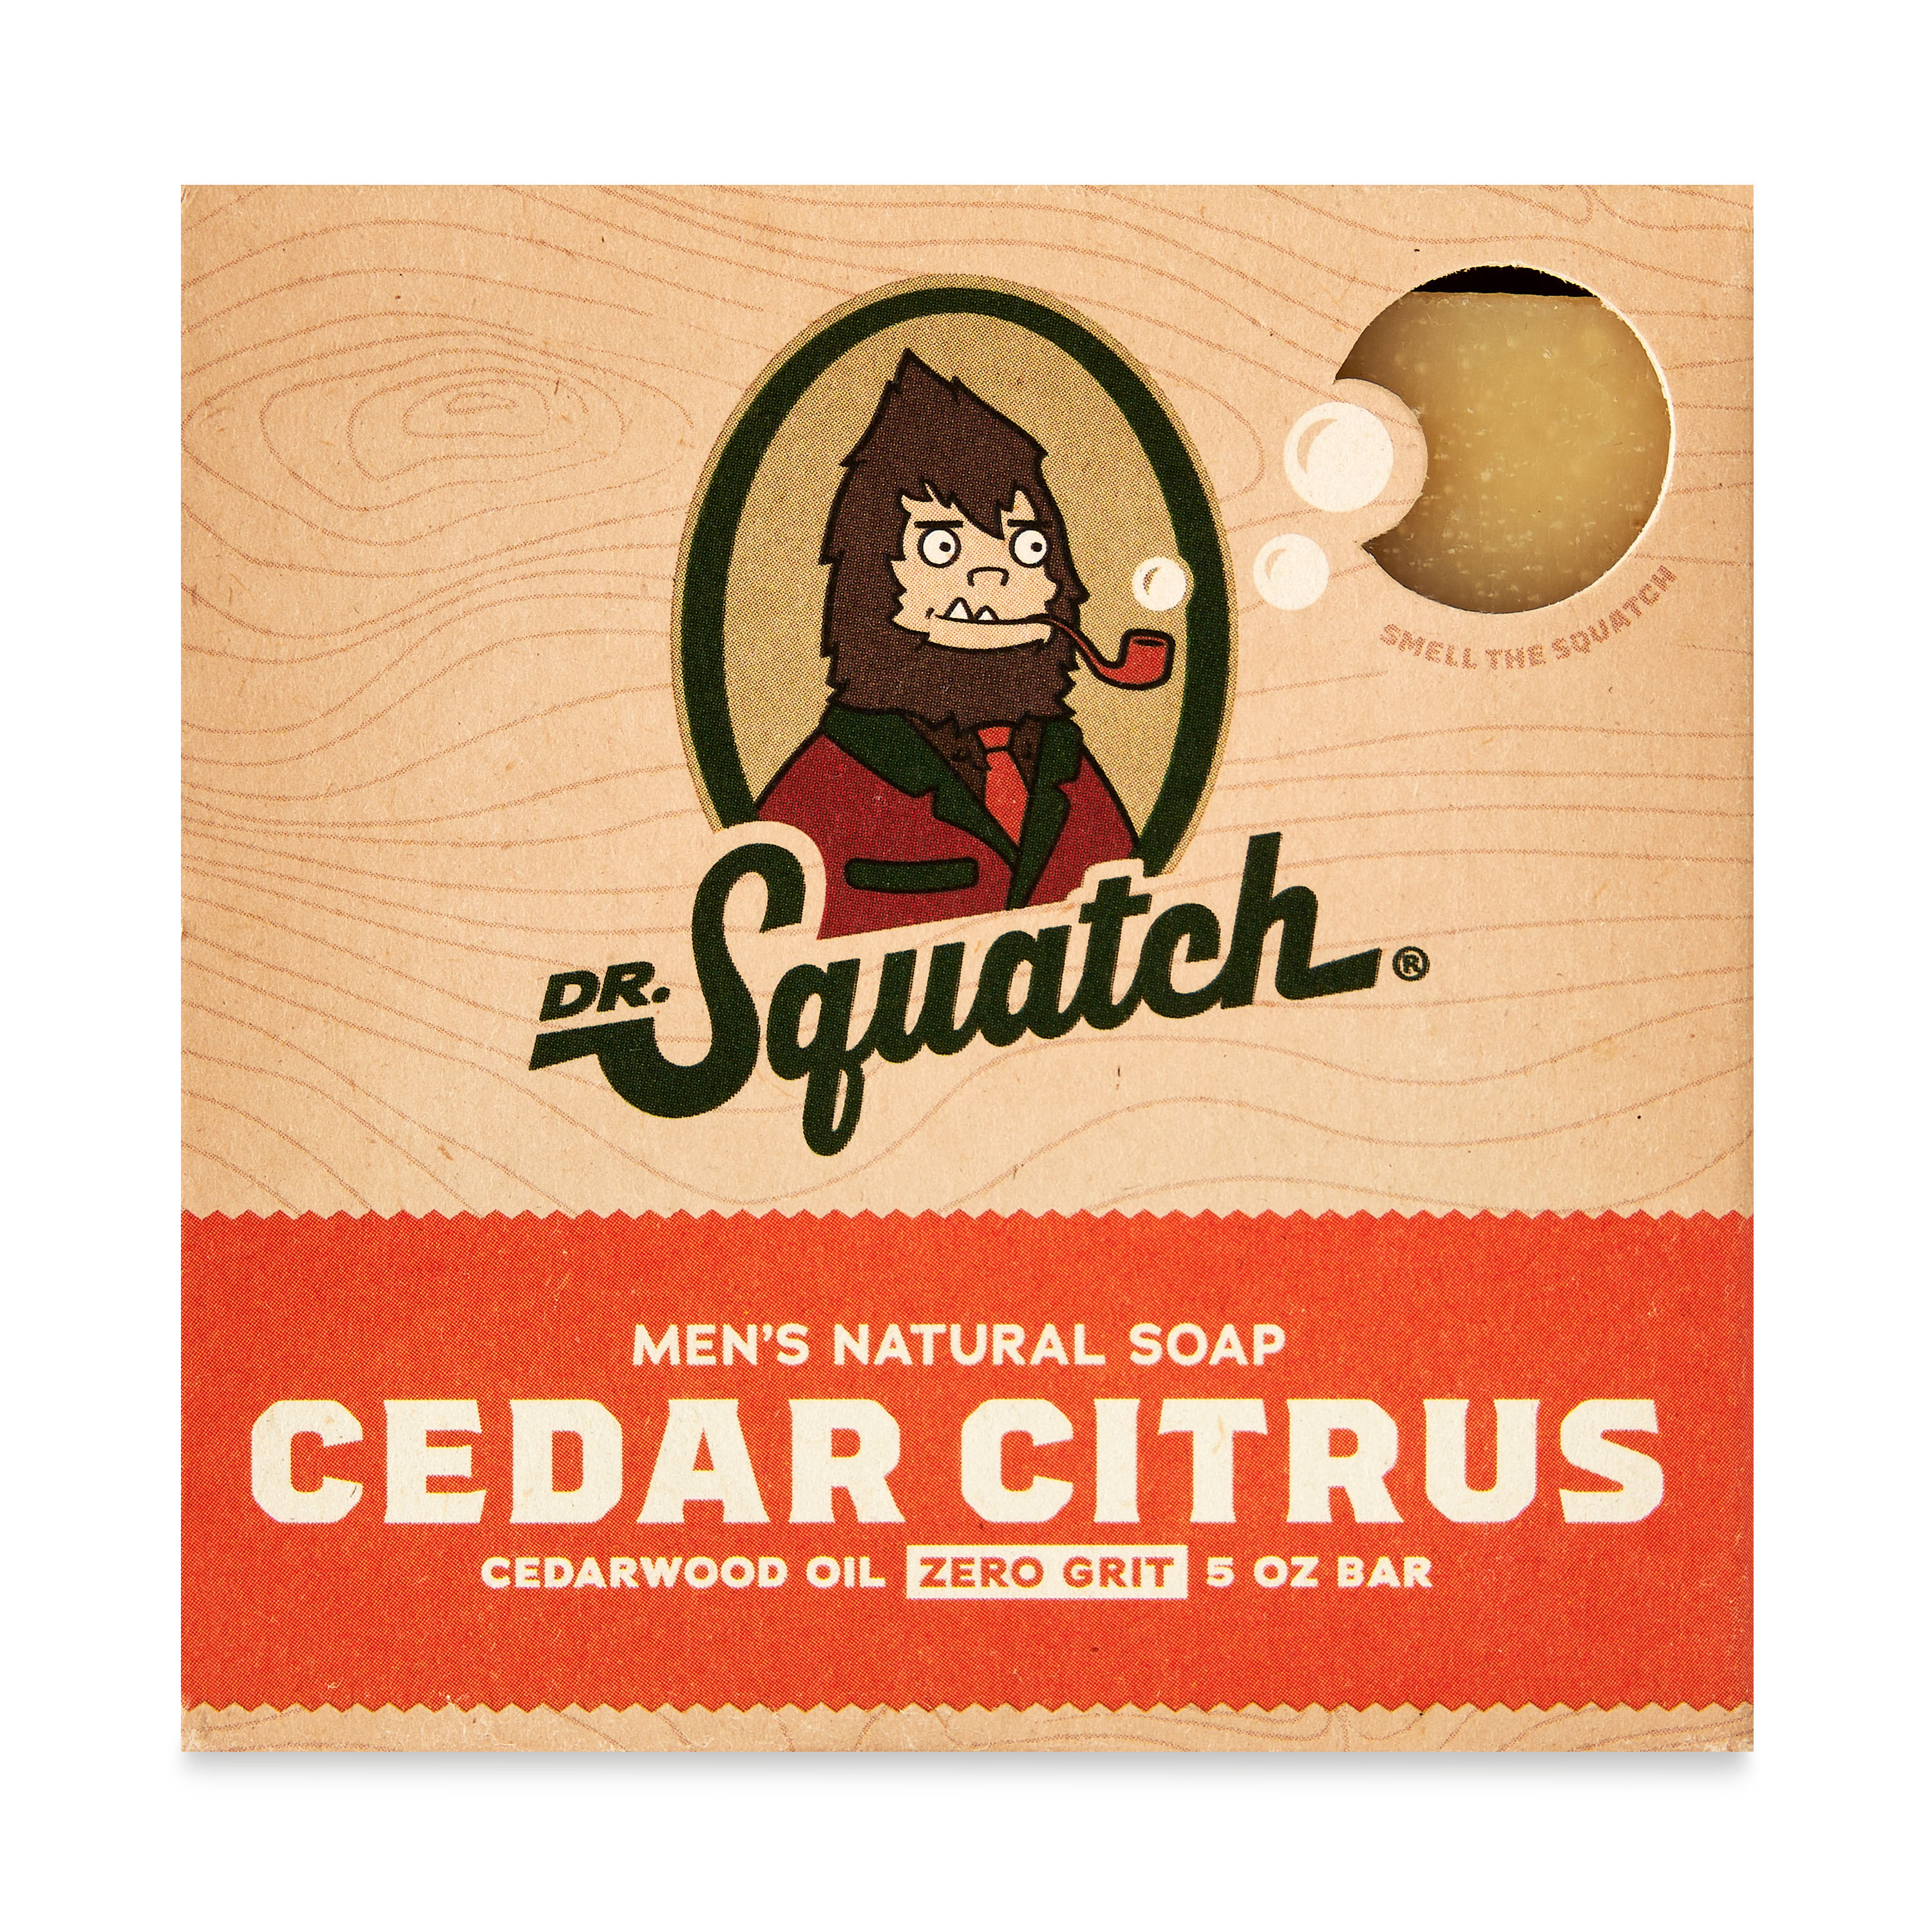 Dr. Squatch Soap Co. Men’s Cedar Citrus Soap - image 1 of 5